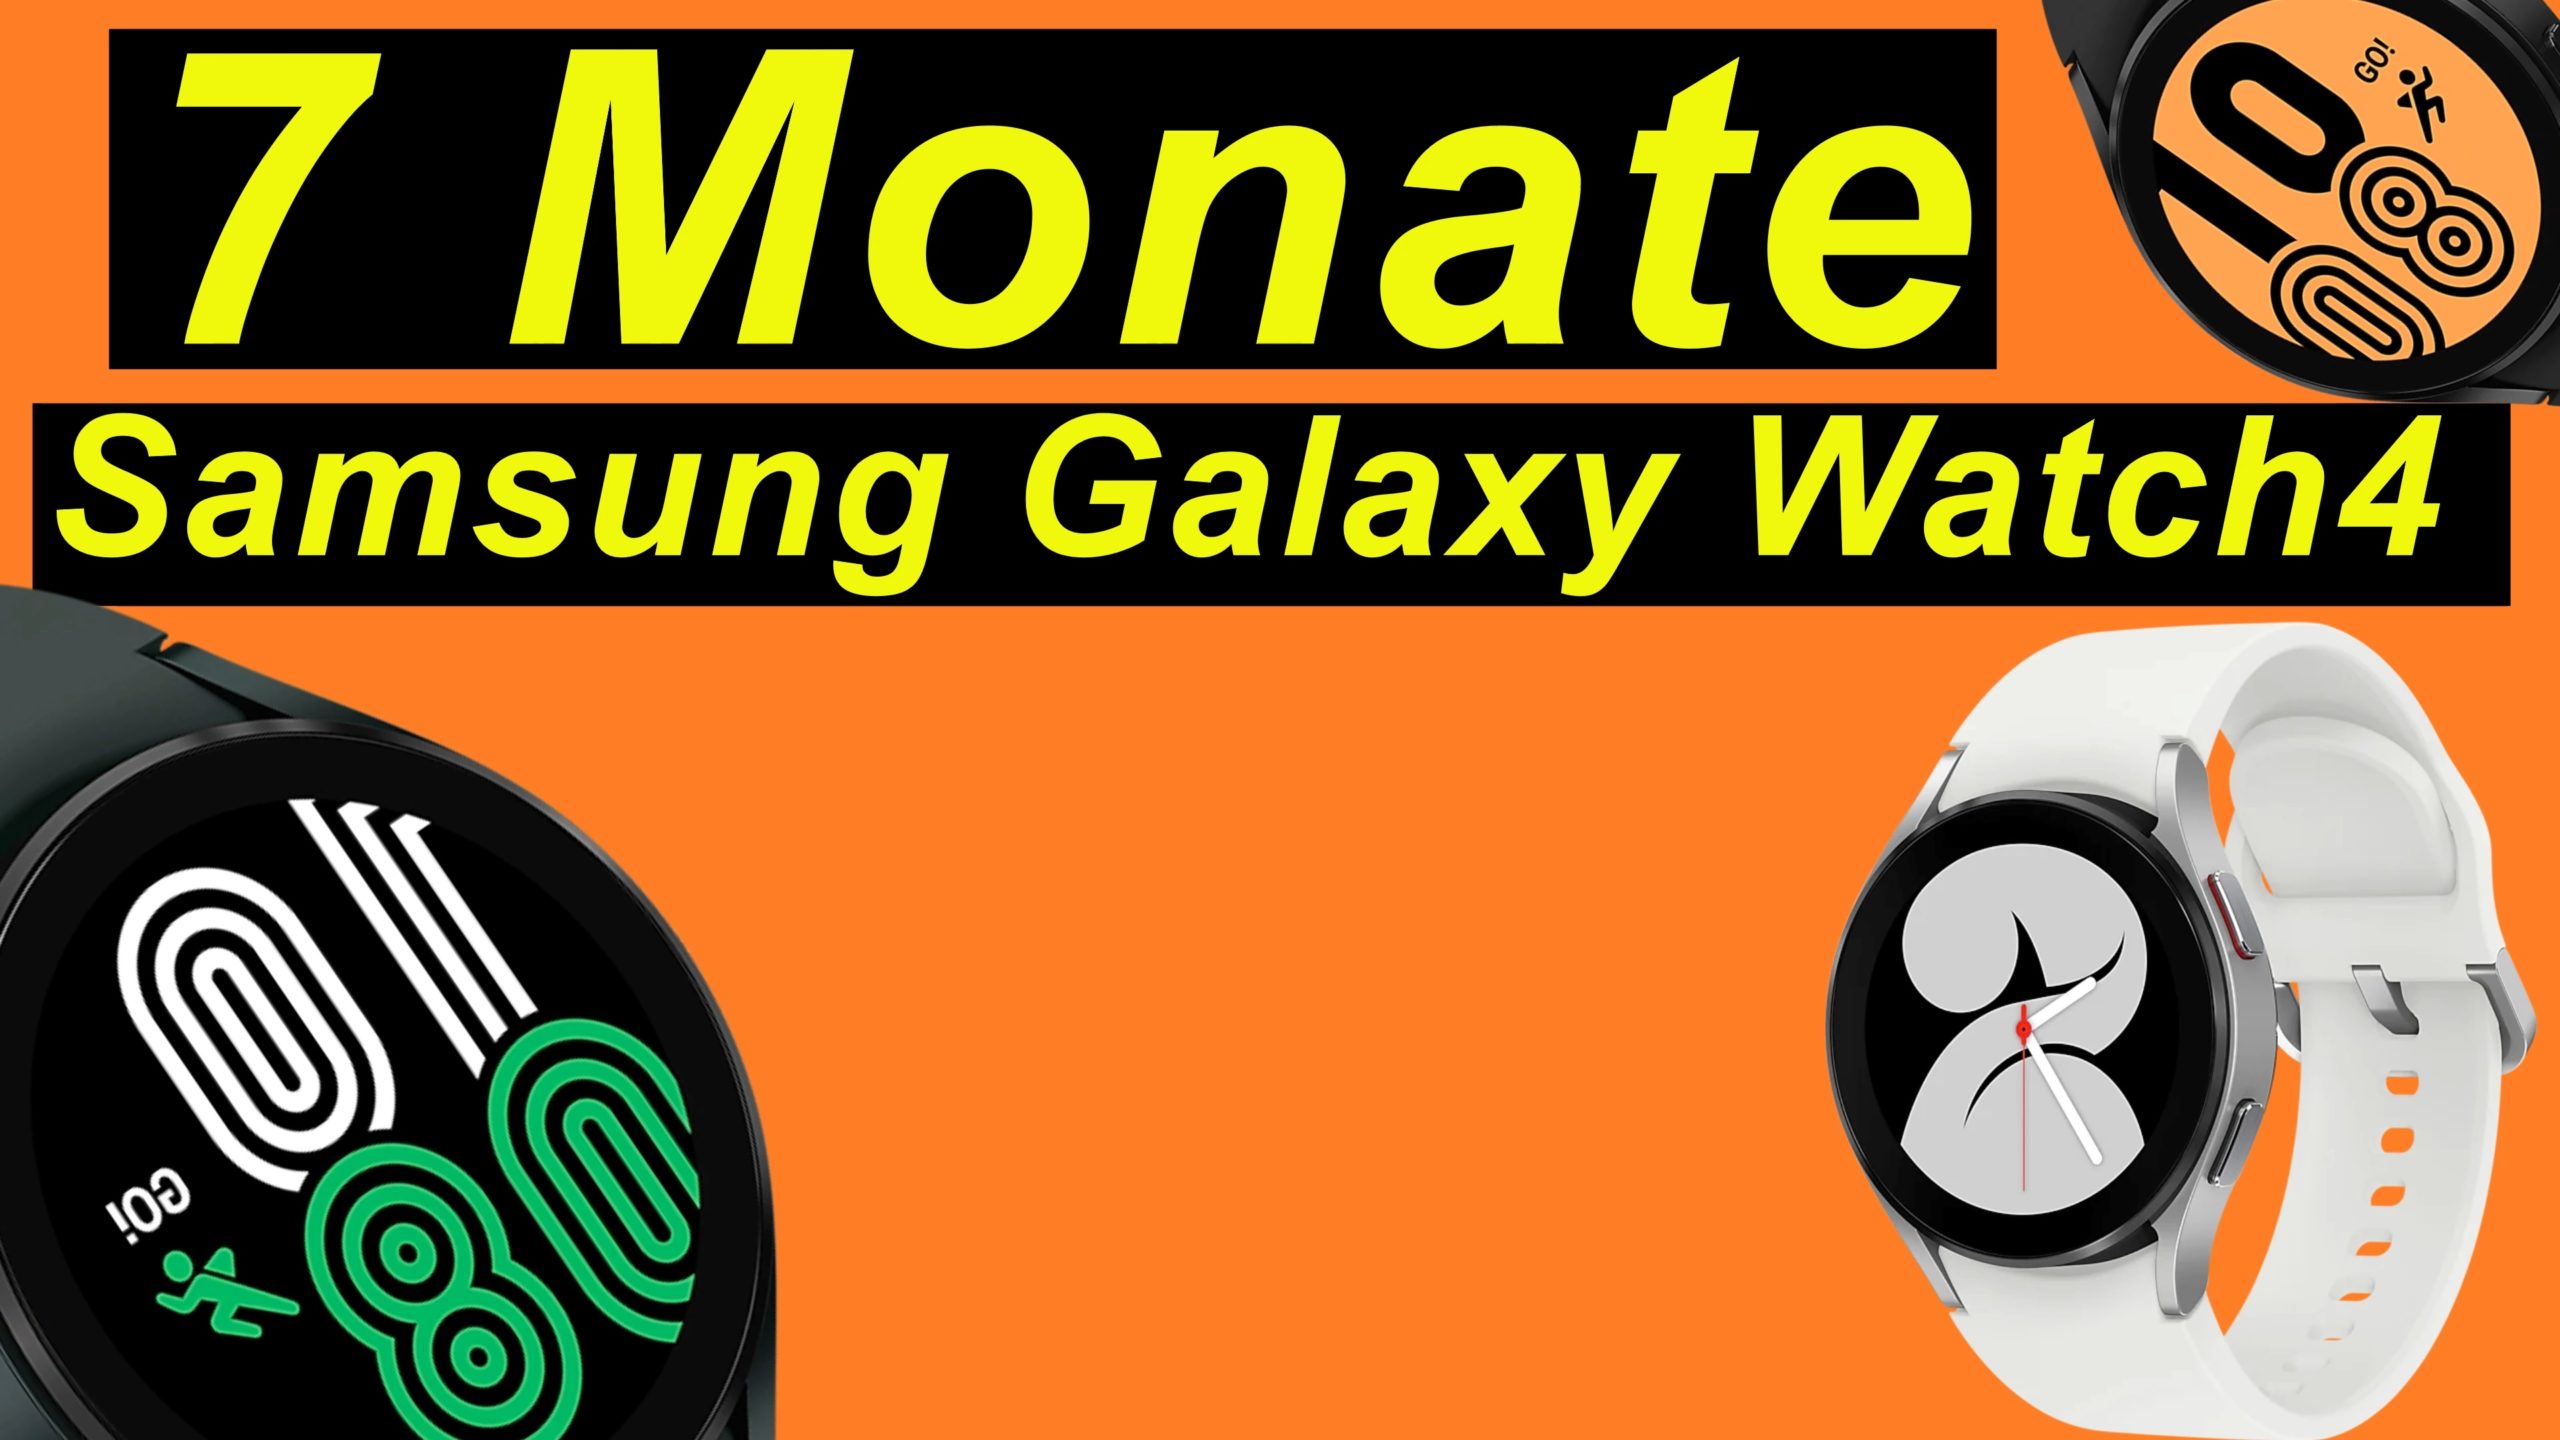 7 Monate mit der Samsung Galaxy Watch 4 - Langzeit Testbericht (Watch4)